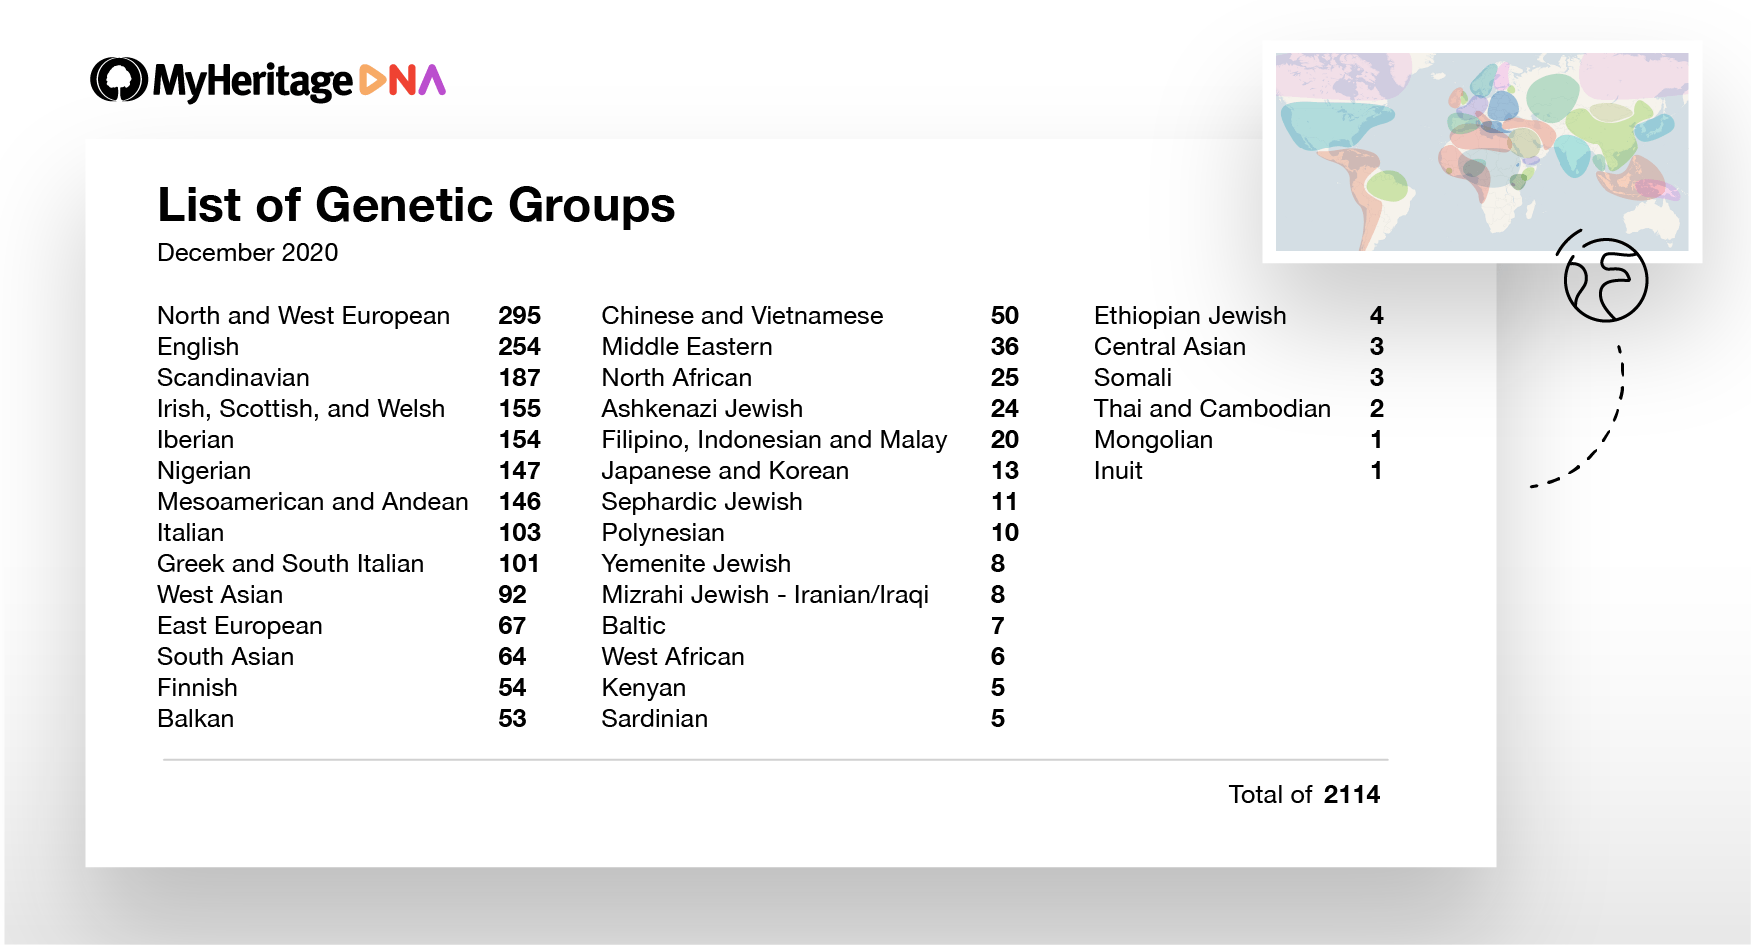 Liste du nombre de groupes génétiques disponibles aujourd’hui, sous leurs principales origines ethniques. Par exemple, il y a 103 groupes génétiques à prédominance italienne et 154 groupes génétiques ibériques (cliquez pour agrandir)